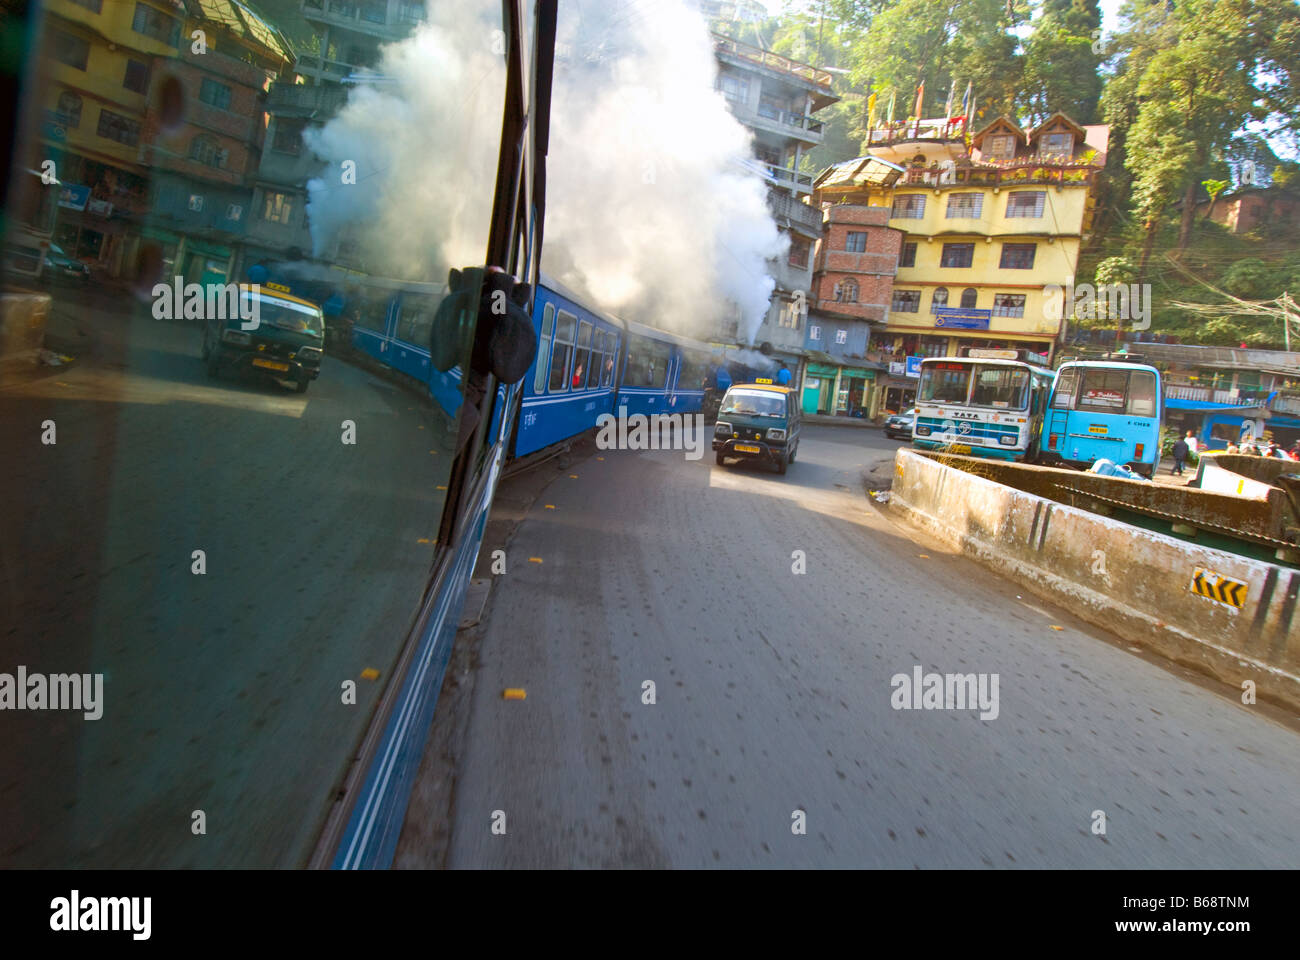 Le 'Petit Train' de la Darjeeling Himalayan Railway s'étend le long de la rue de Darjeeling, le mélange avec la circulation routière Banque D'Images